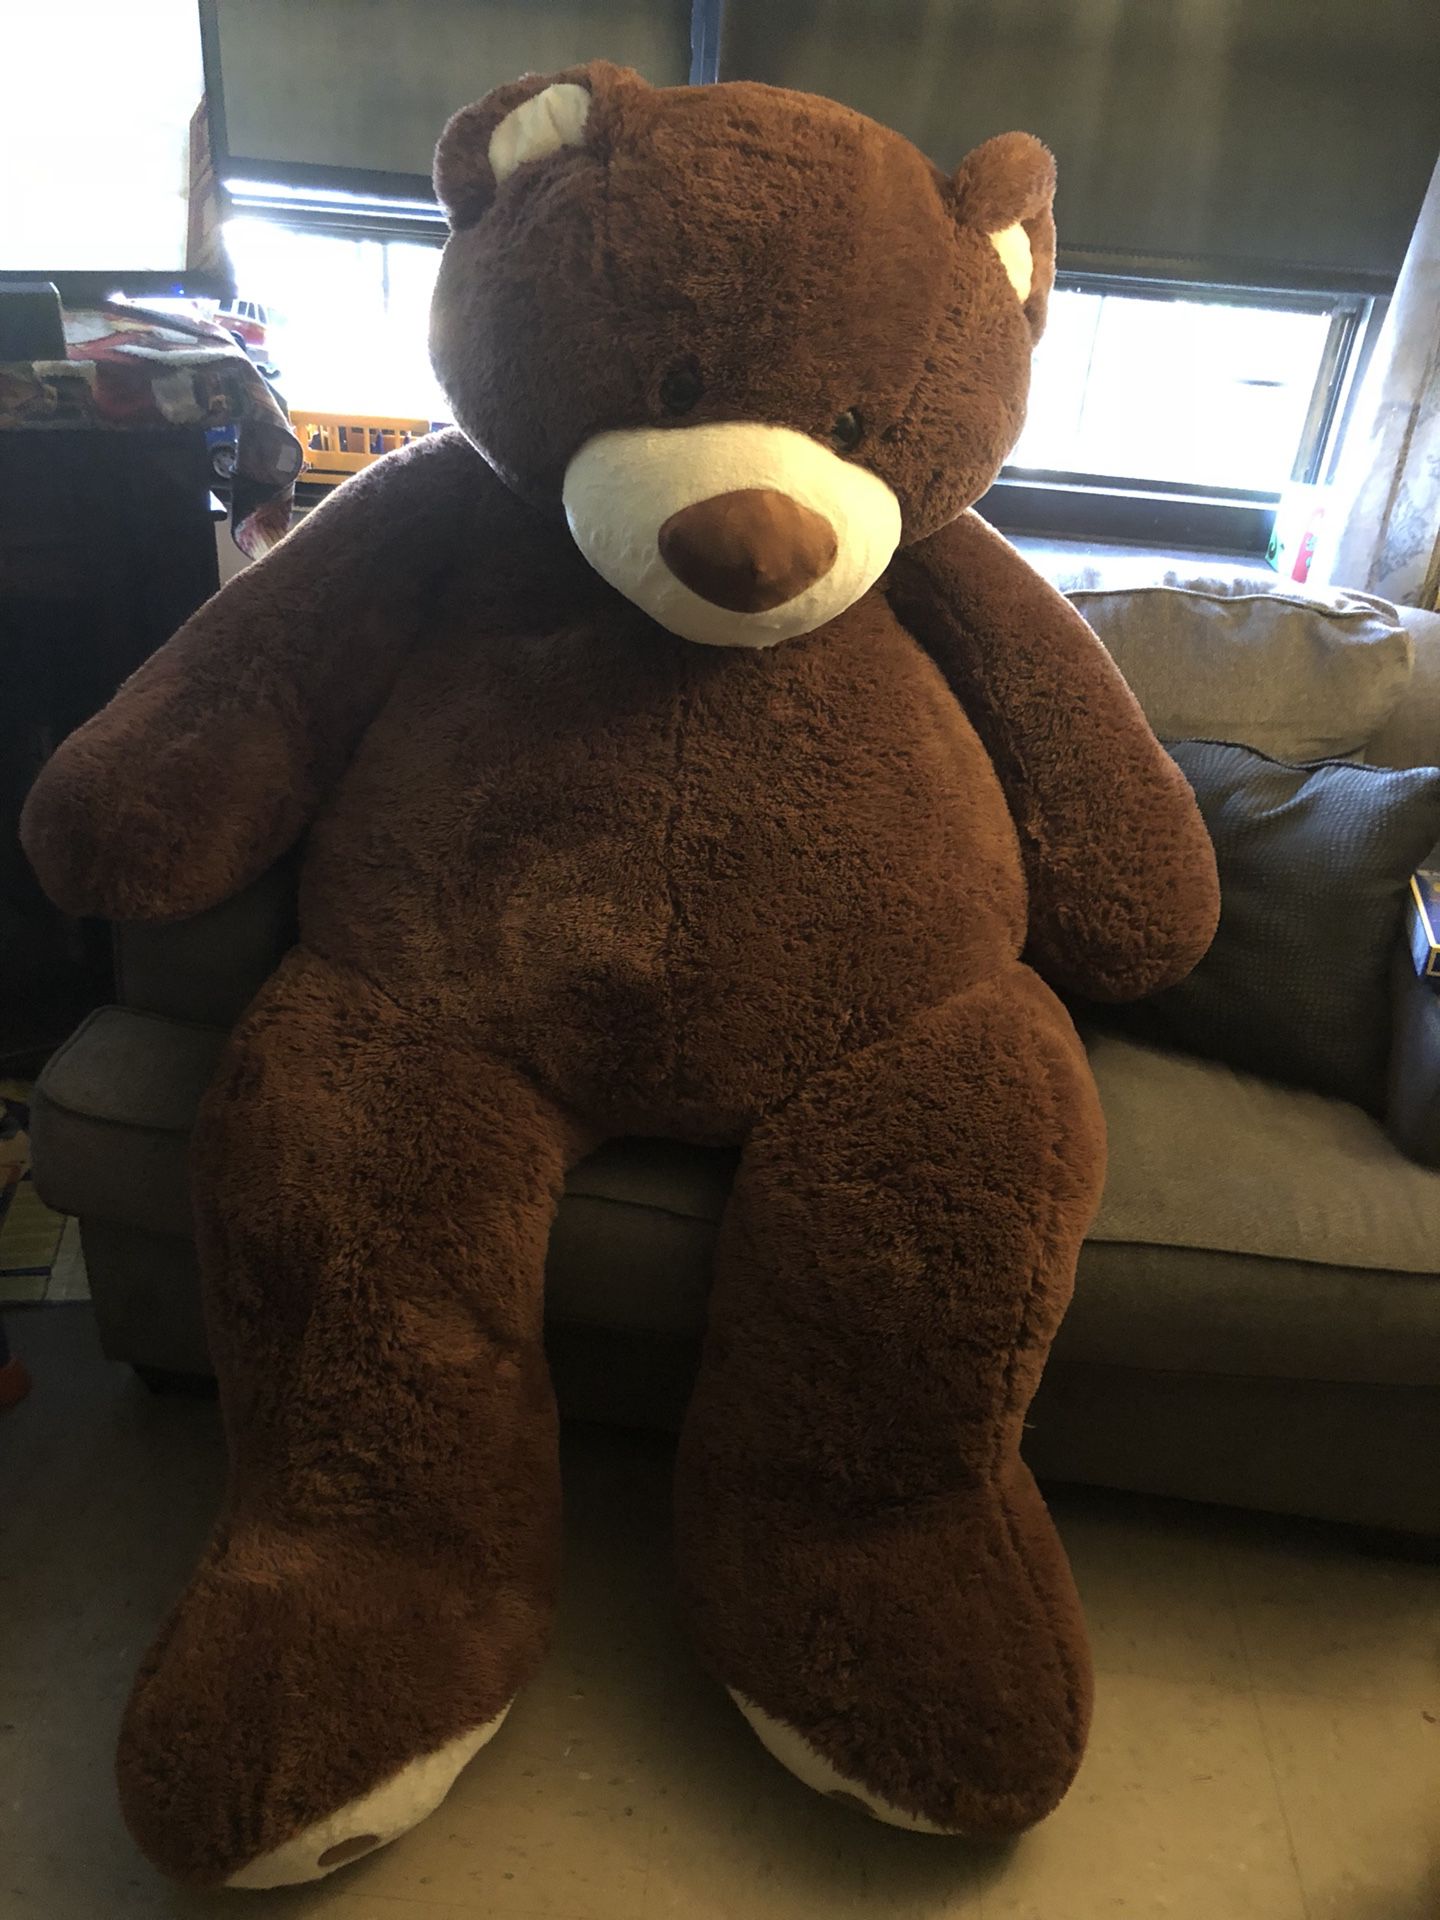 Huge 6FT teddy bear, probably bigger